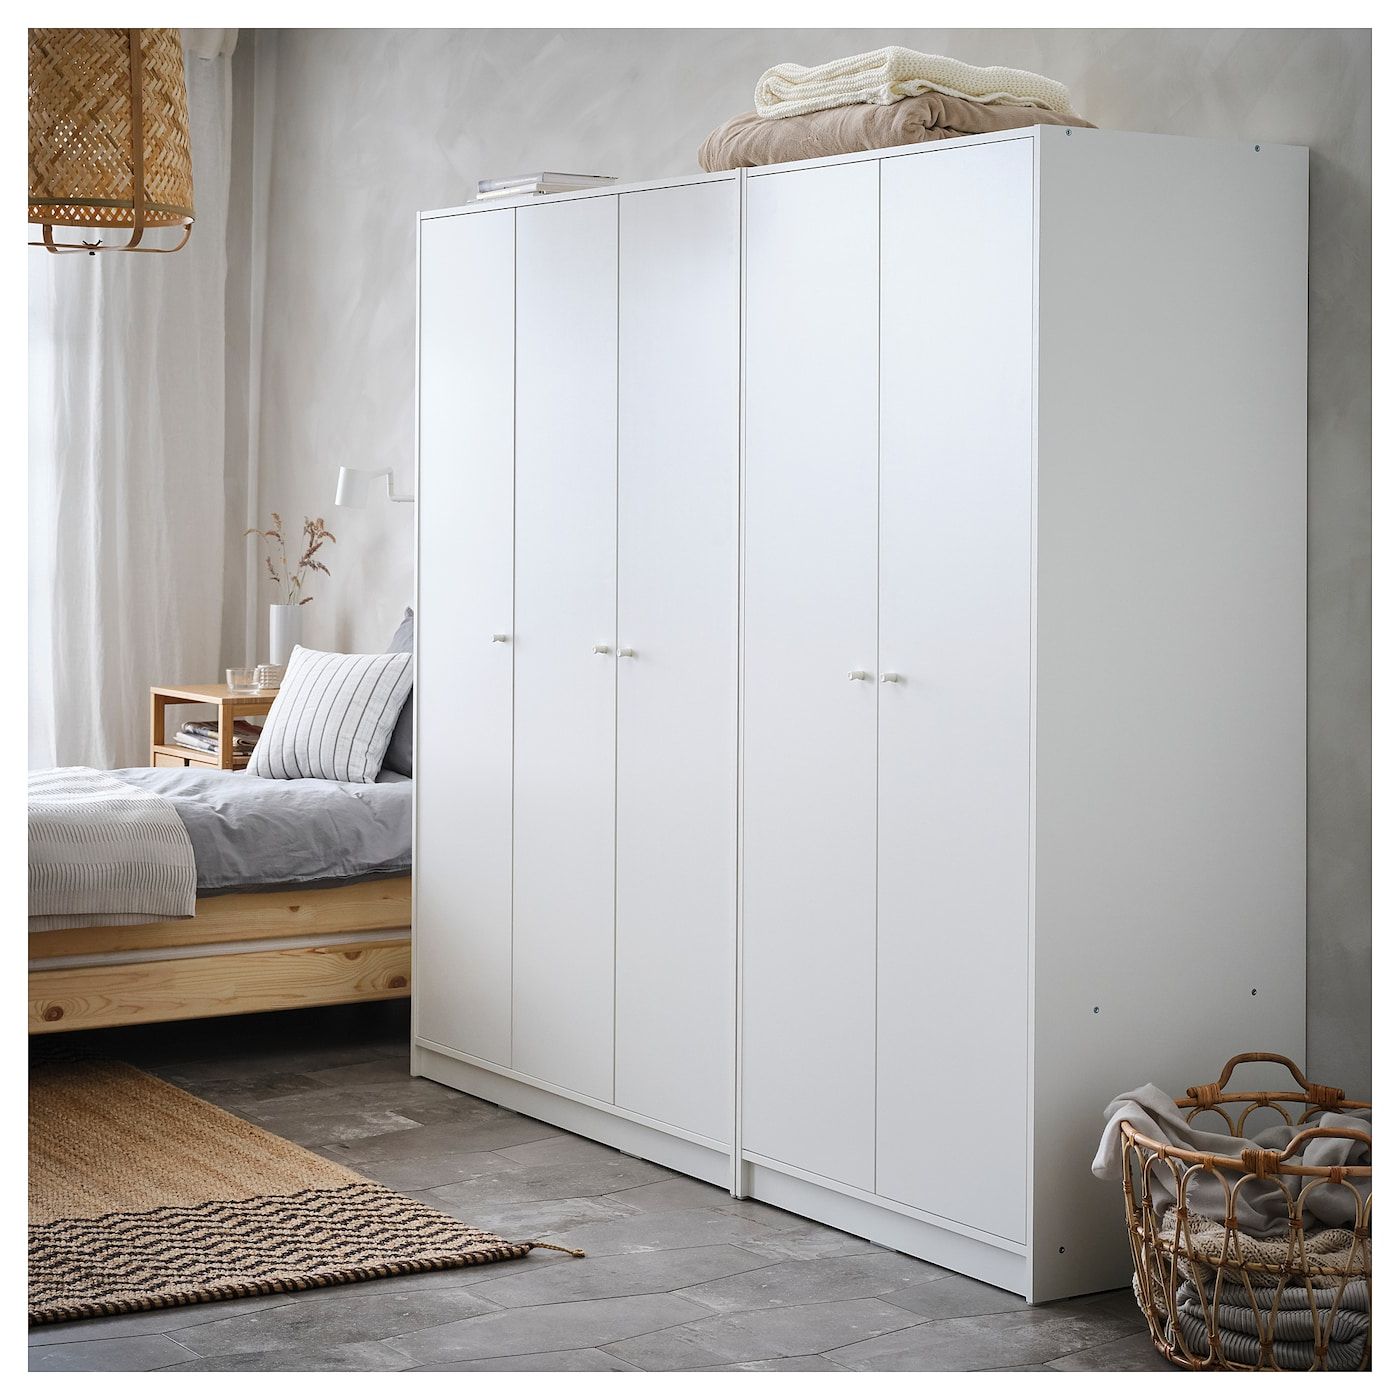 Kleppstad White, Wardrobe With 3 Doors, 117x176 Cm – Ikea In Cheap 3 Door Wardrobes (Gallery 10 of 20)